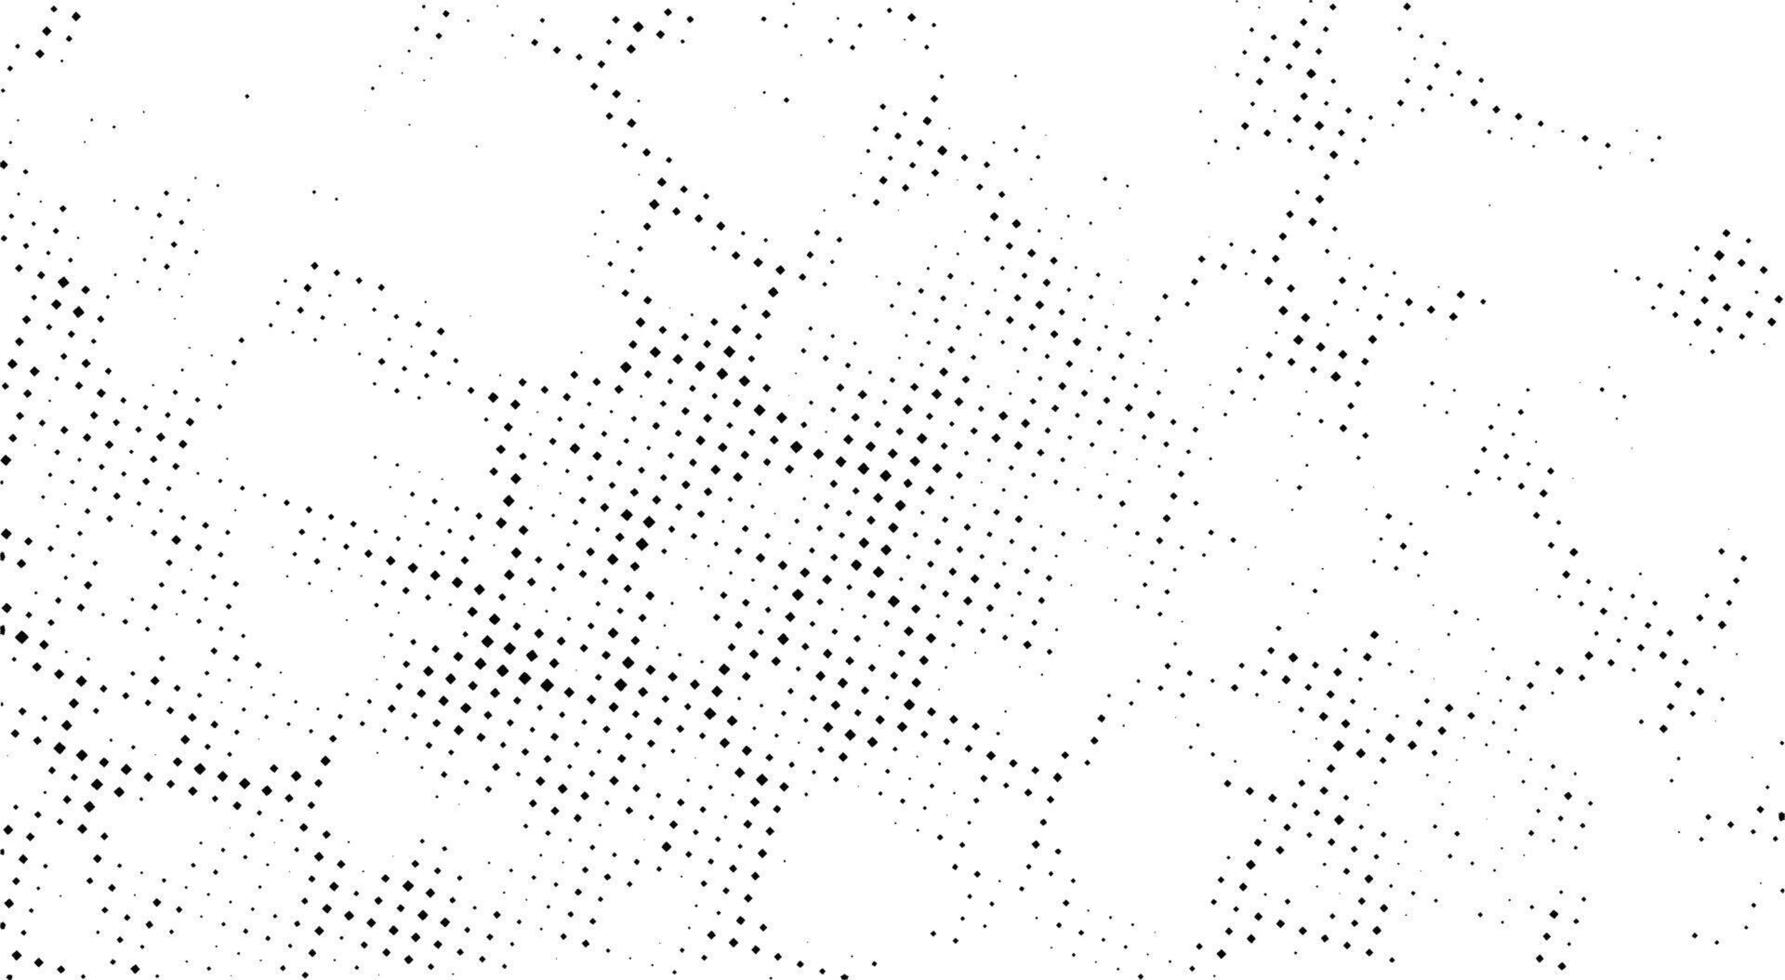 en vit och svart prickad bakgrund med prickar, årgång punkt effekt, prickad mönster textur rutnät perforerad fading prickar svartvit mönster vektor